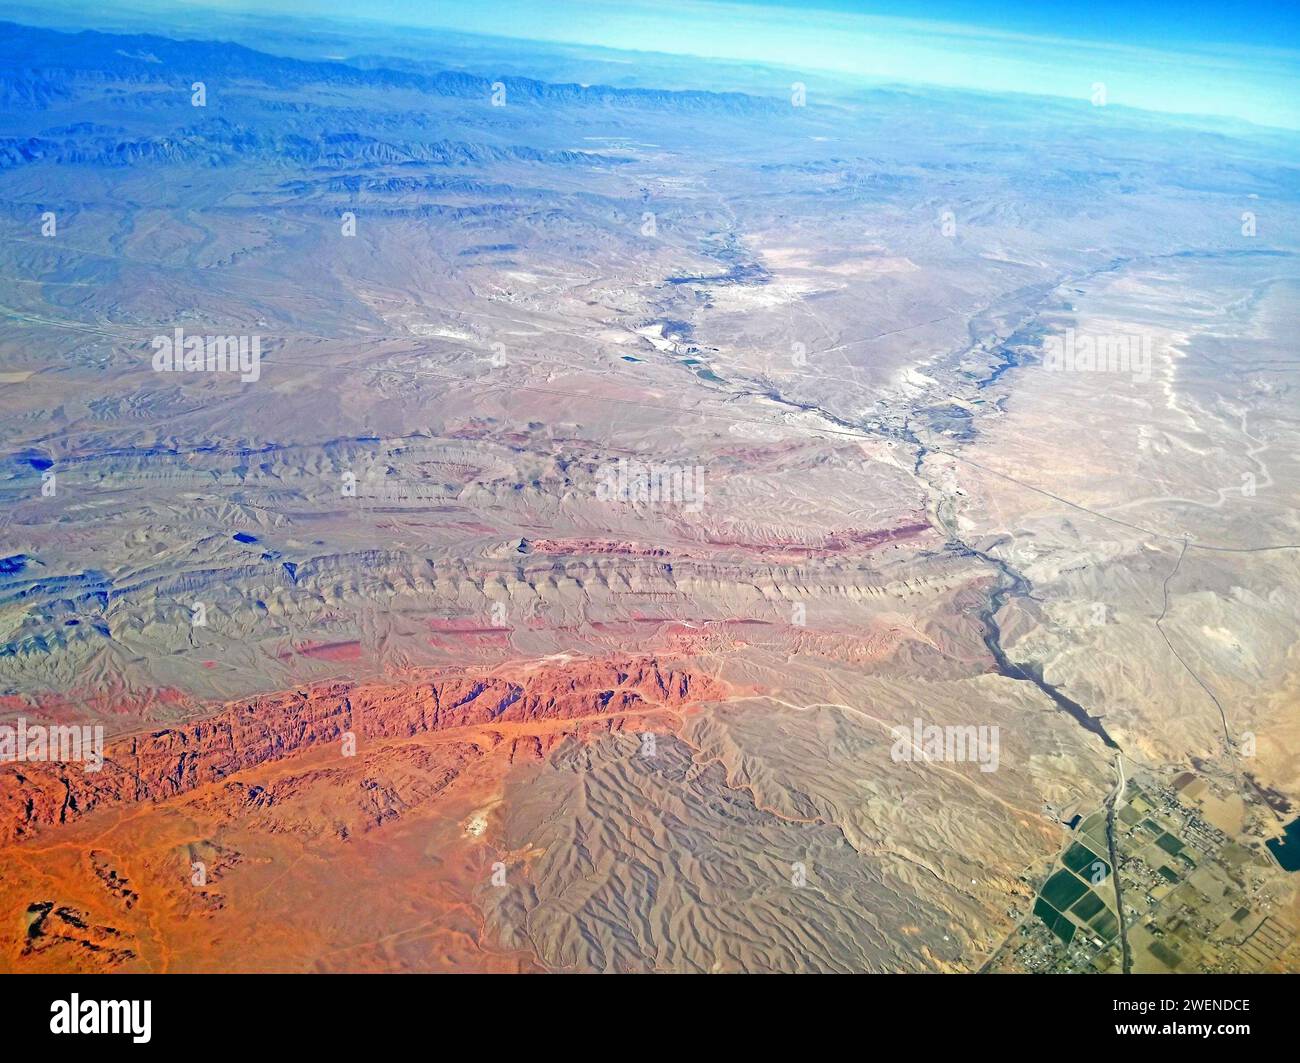 Vallée de feu grès rouge dans le soleil. Overton en bas à droite, en regardant vers le NW vers Moapa Nevada. Vue aérienne. Banque D'Images